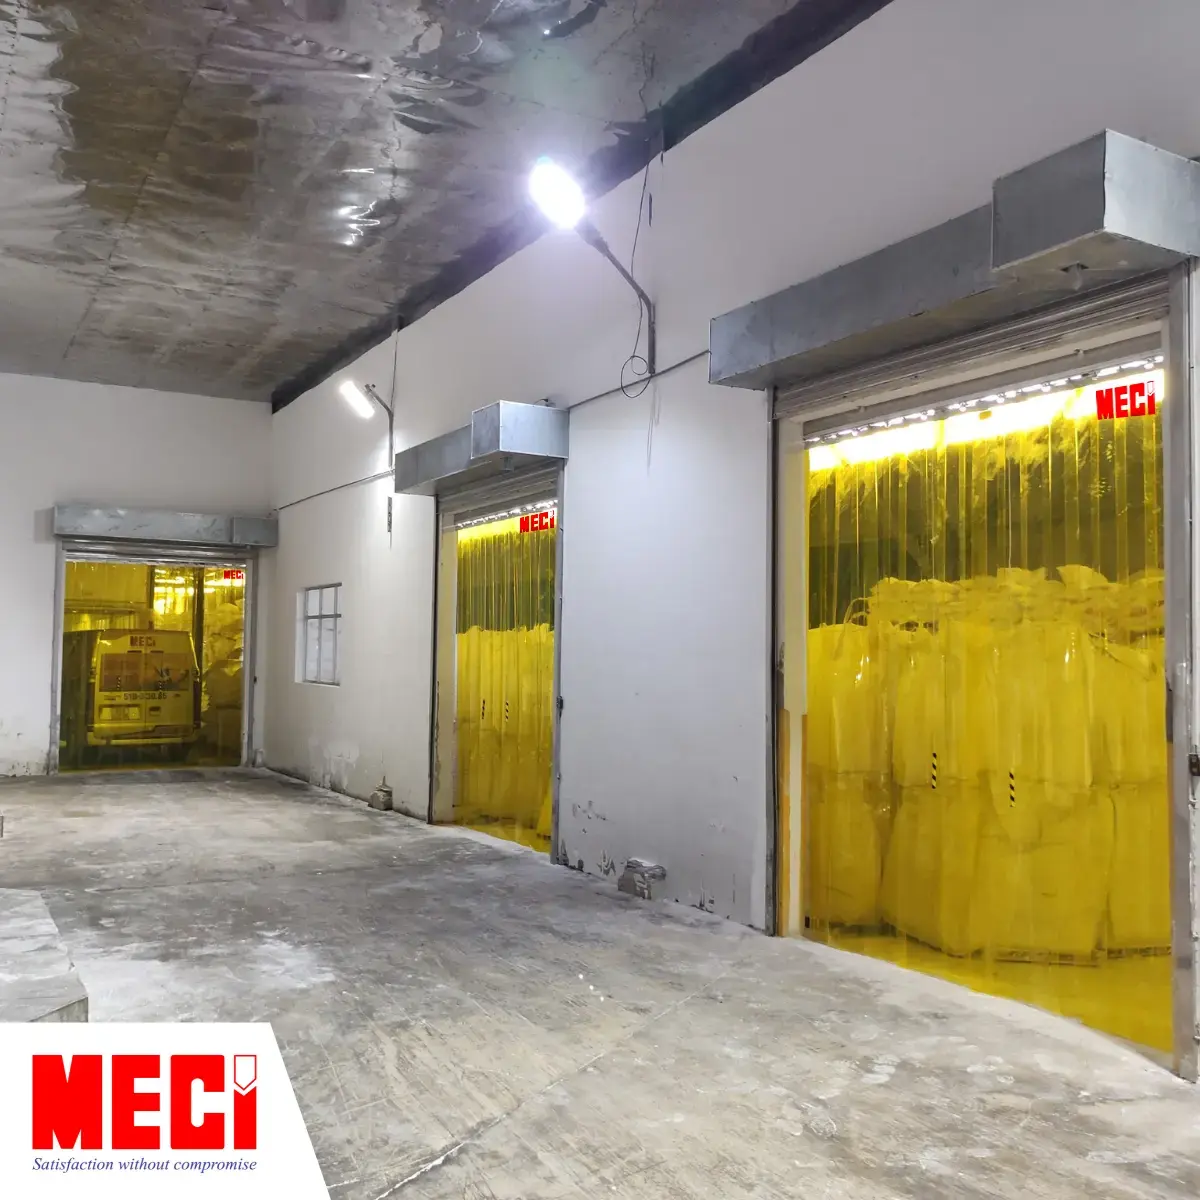 3 lối ra vào của một nhà kho được lắp rèm nhựa PVC màu vàng, bên trong kho có nhiều hàng hoá